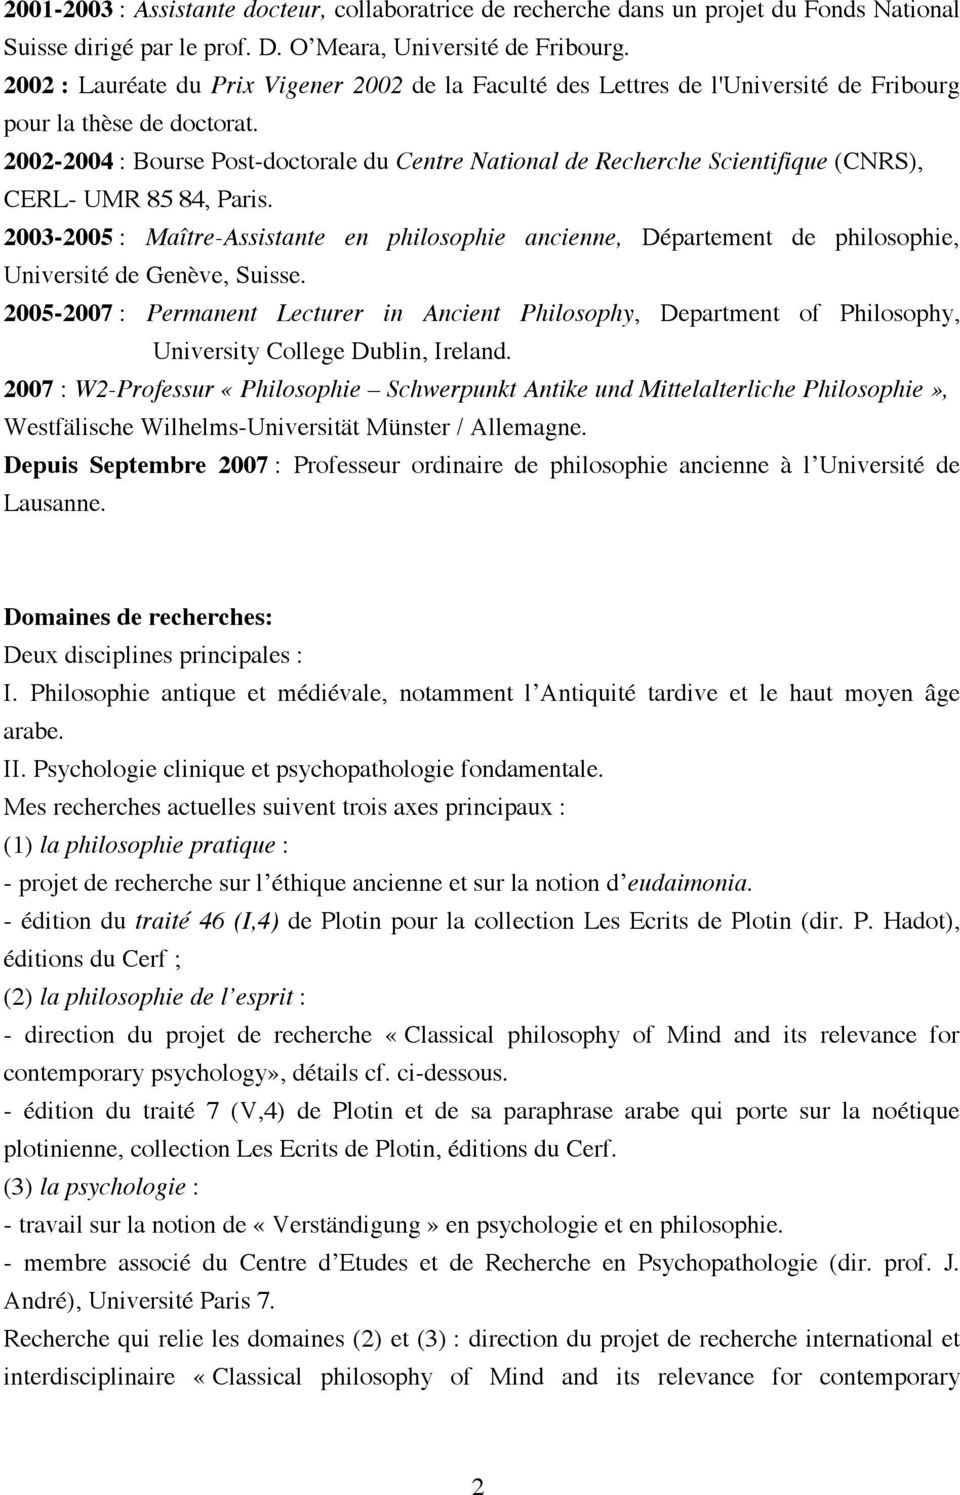 2002-2004 : Bourse Post-doctorale du Centre National de Recherche Scientifique (CNRS), CERL- UMR 85 84, Paris.